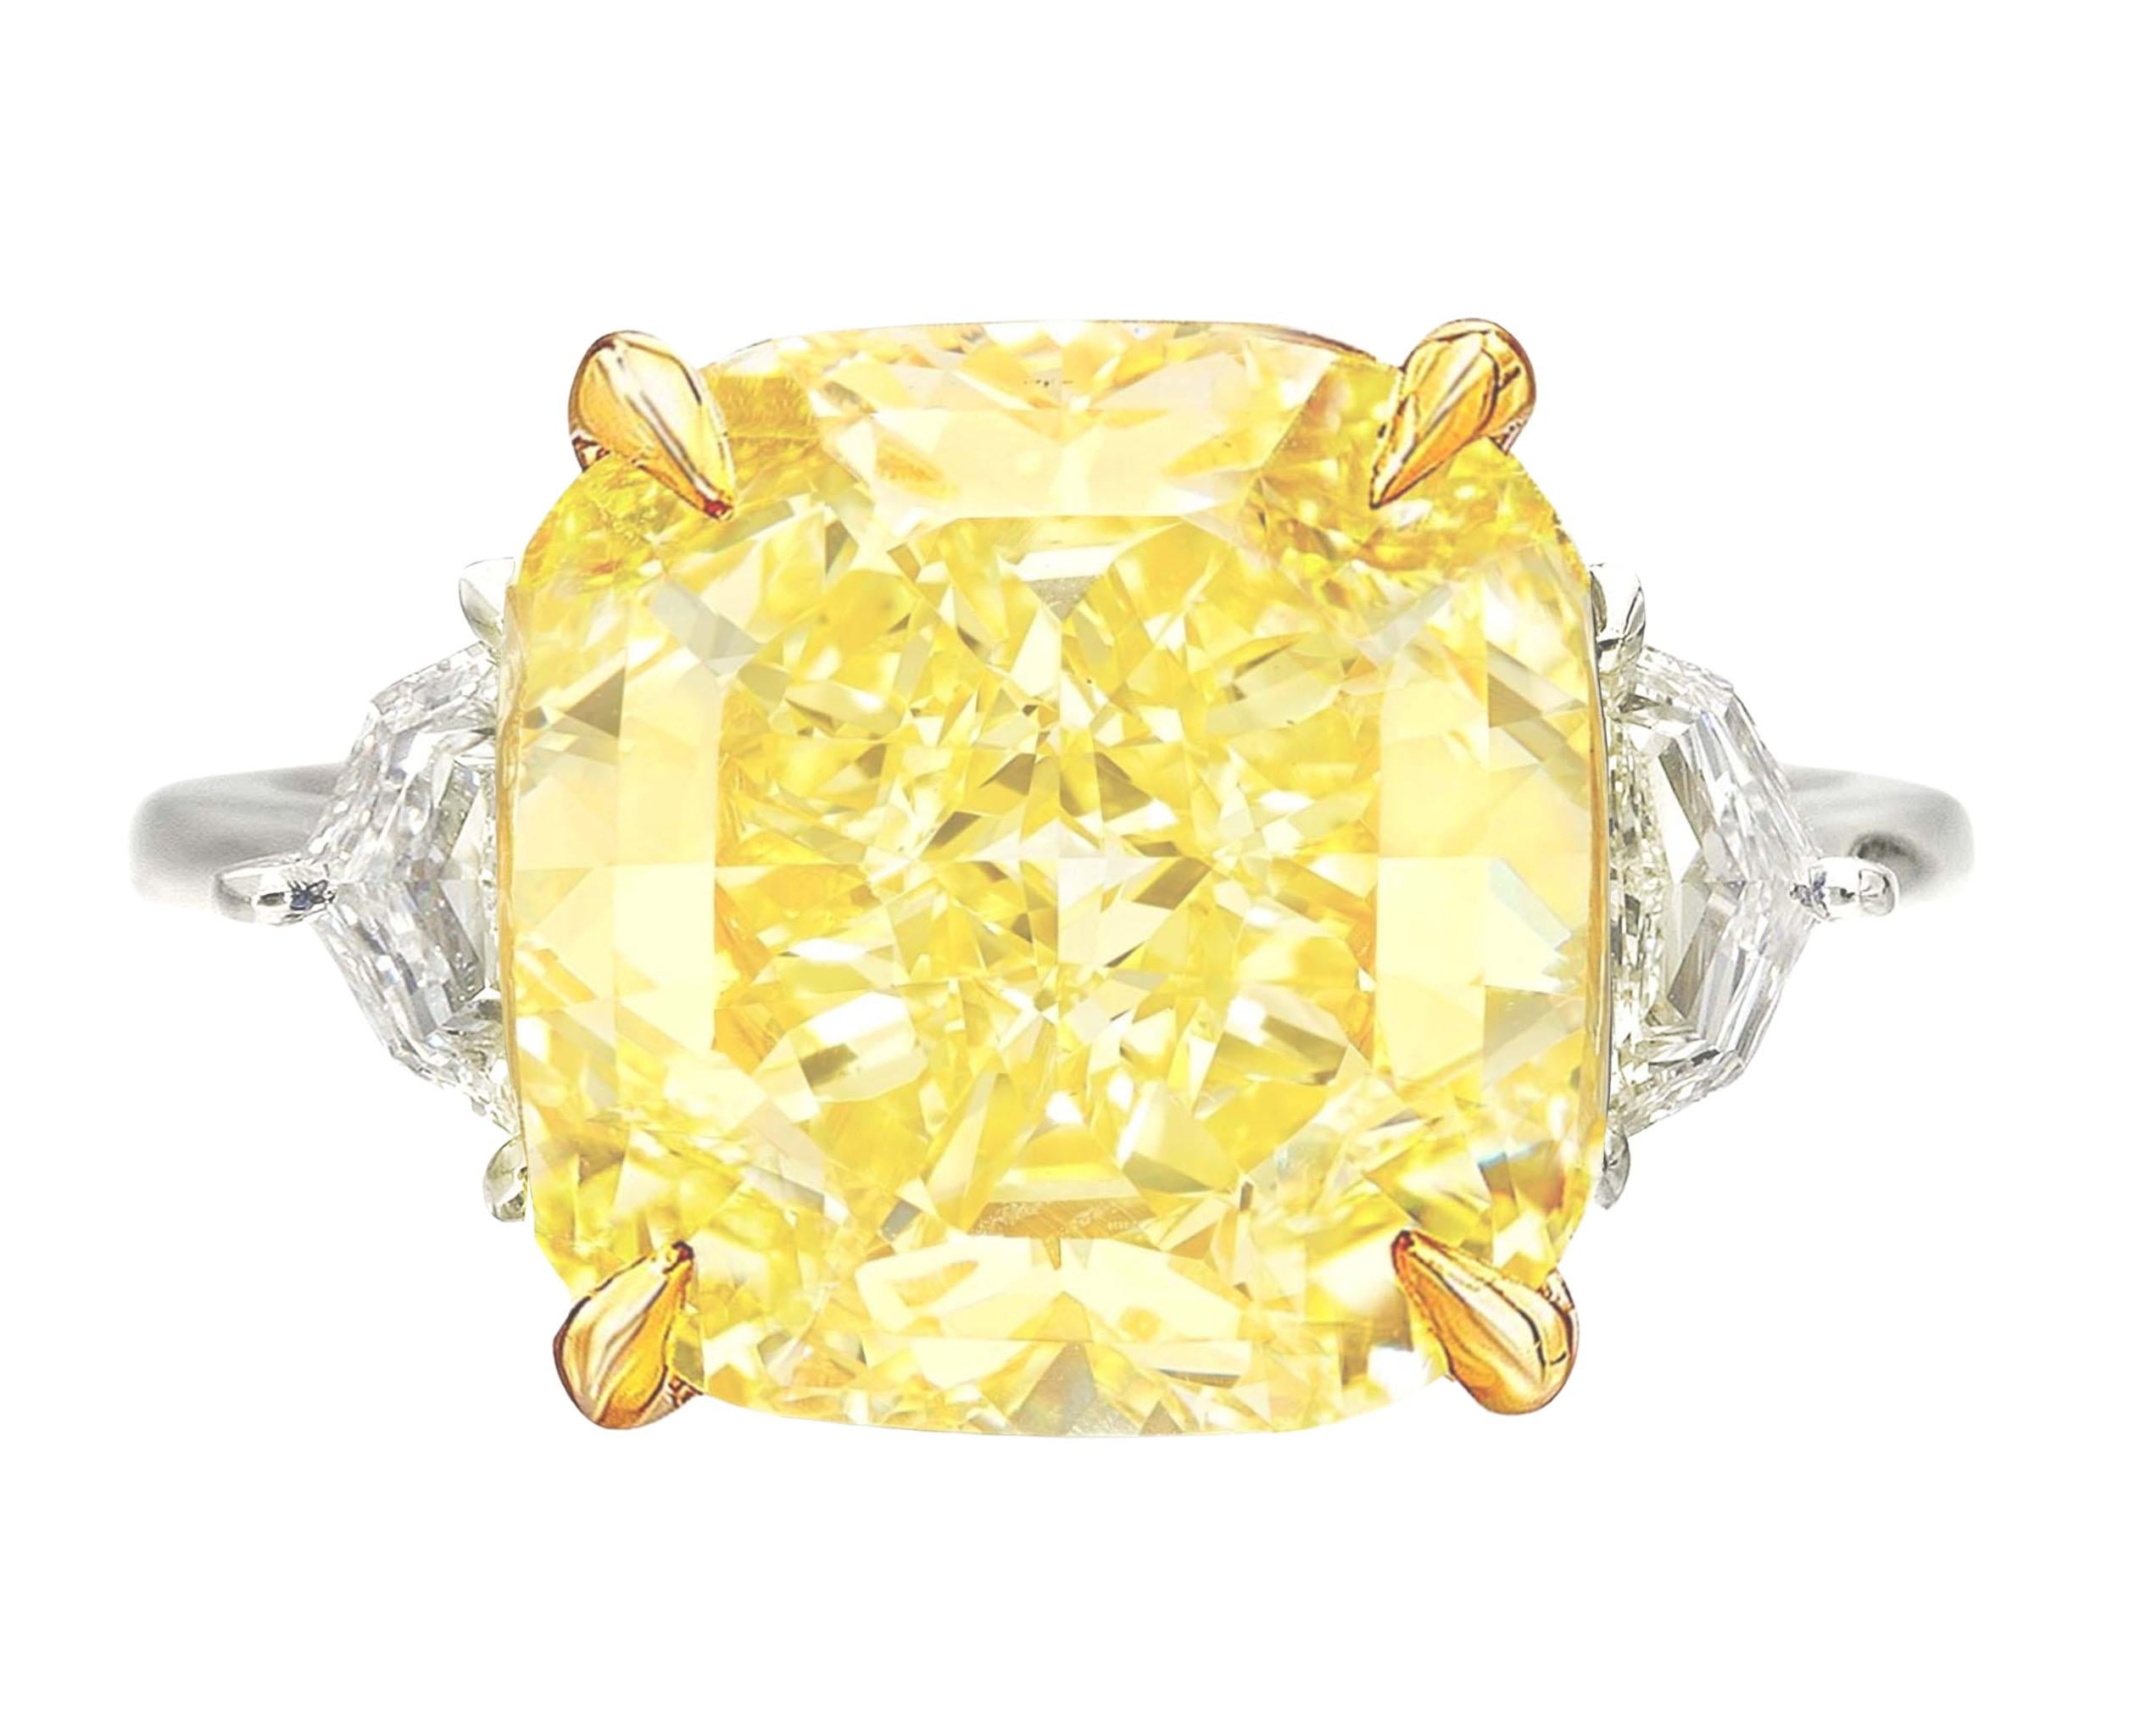 GIA-zertifizierter 10 Karat Diamantring mit gelbem Fancy-Diamant im Kissenschliff